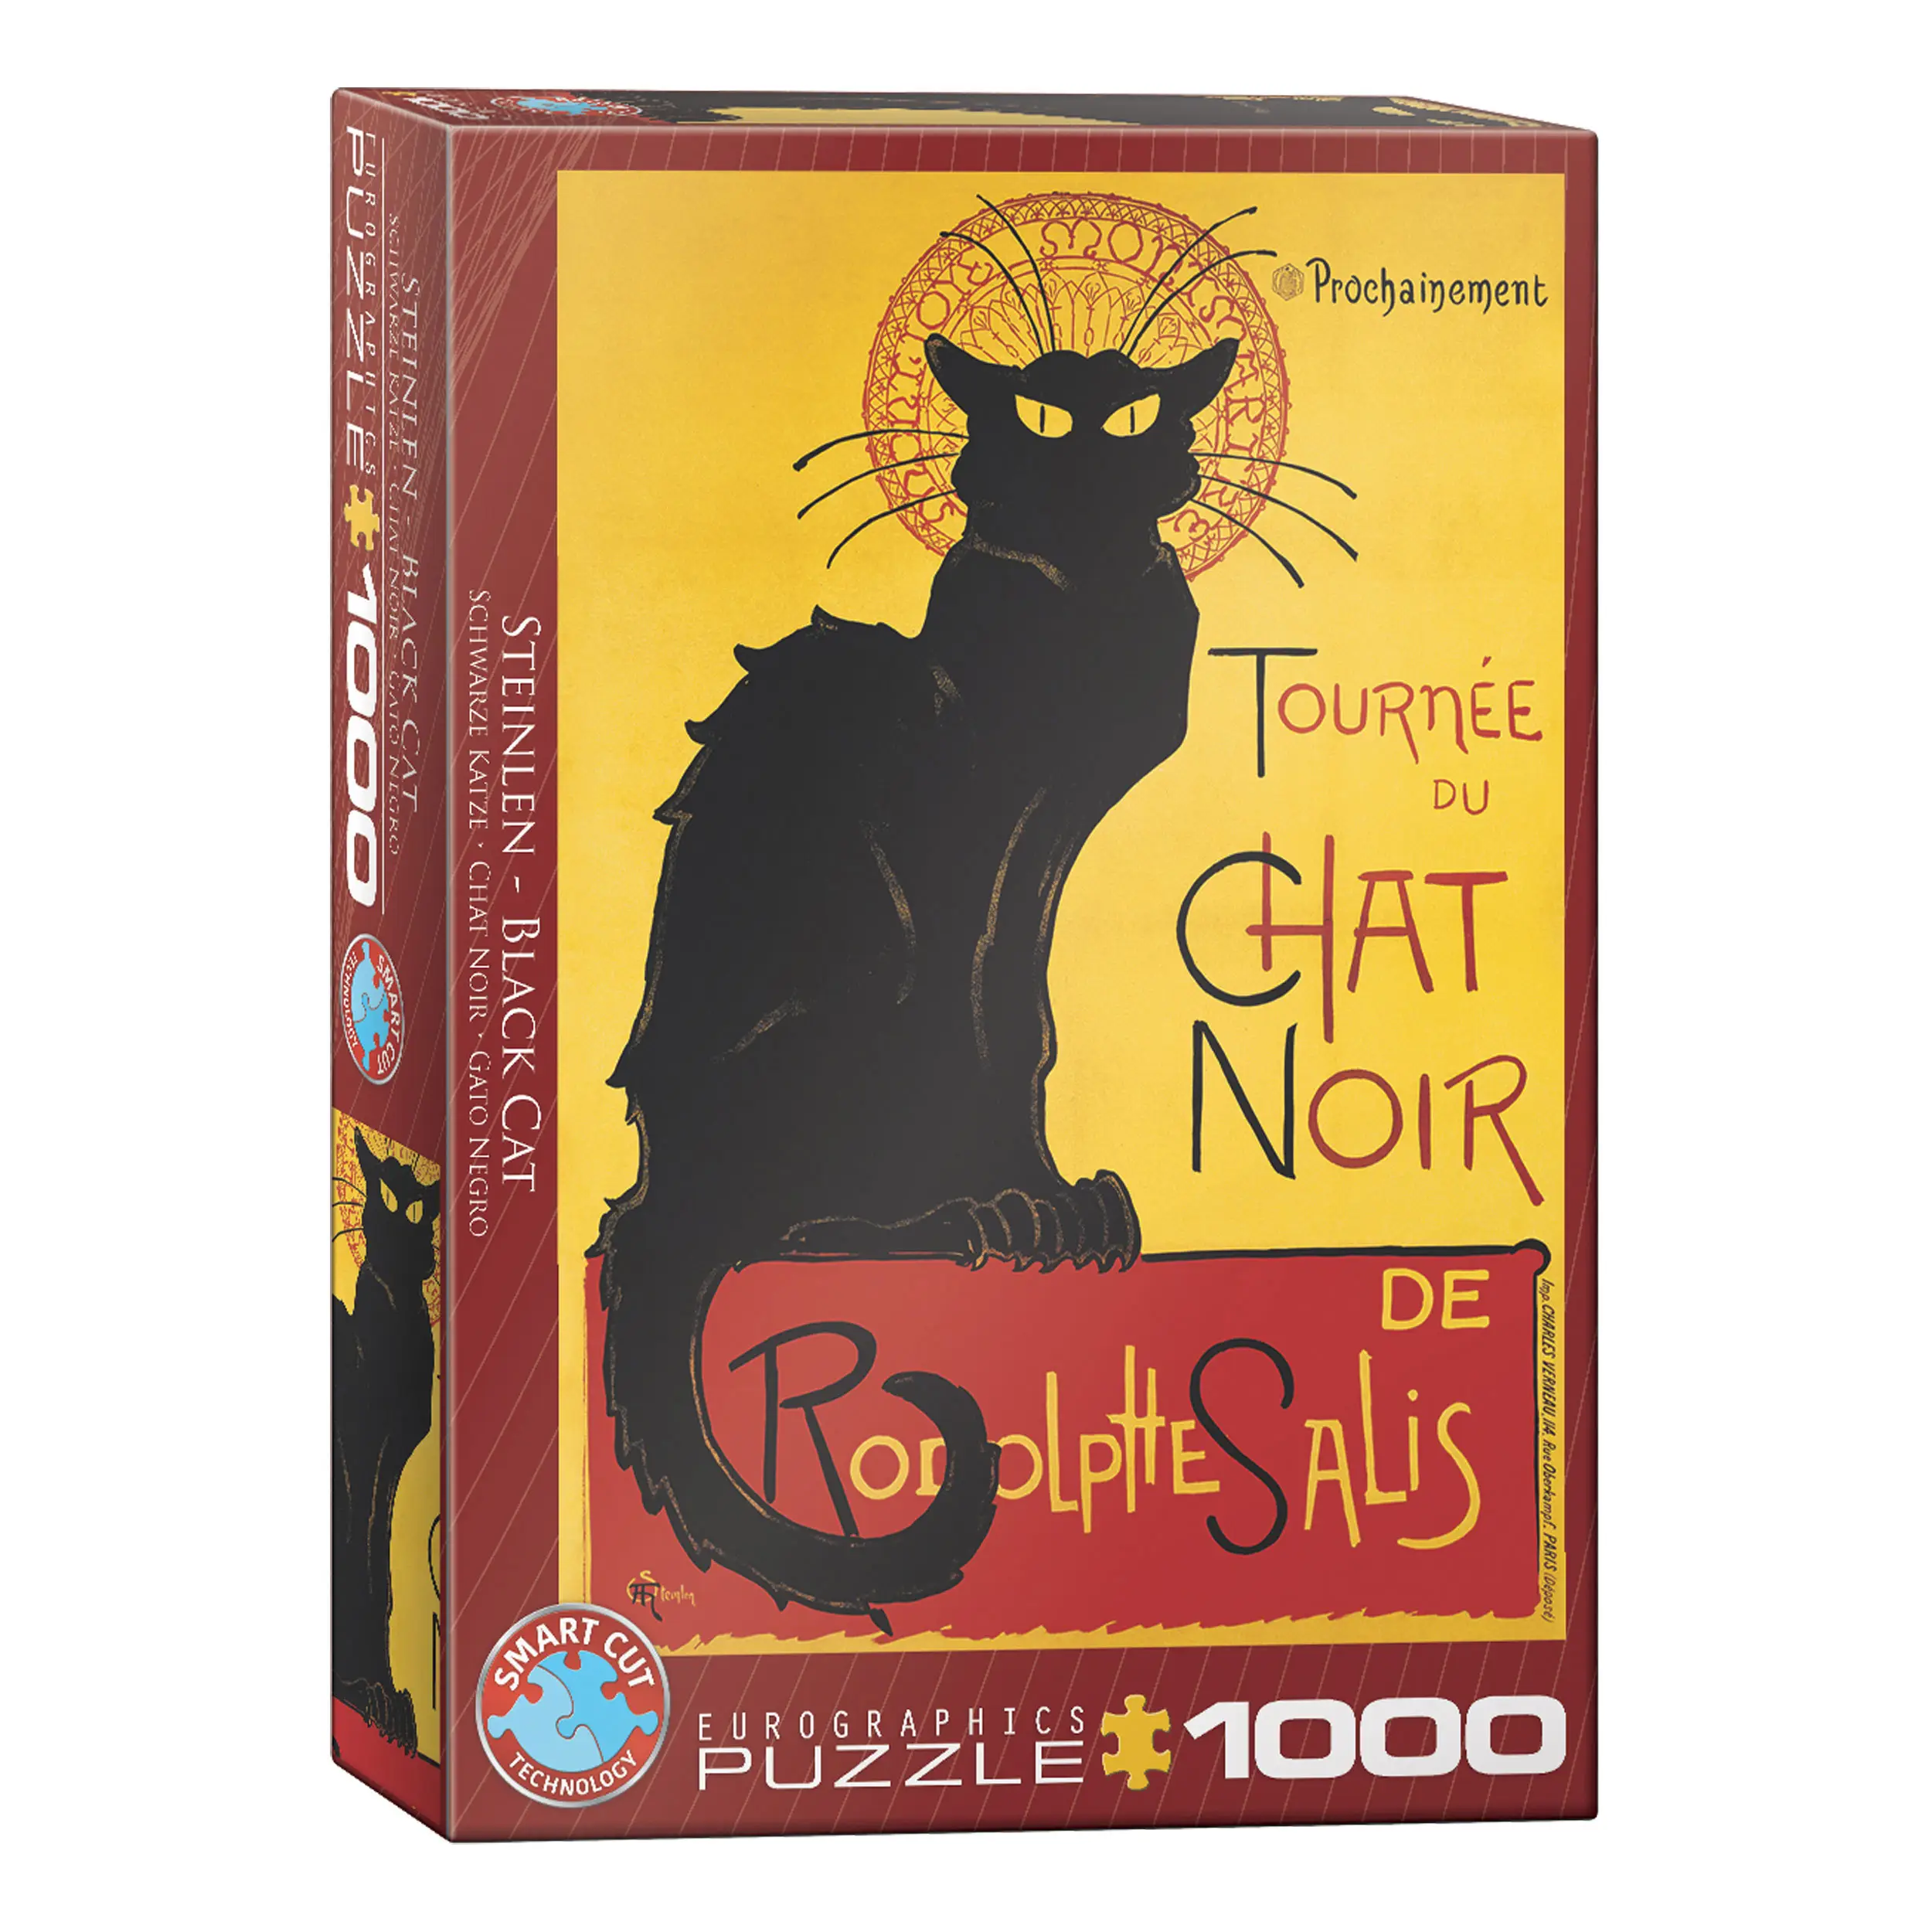 Teile du Puzzle Chat Noir Tournee 1000